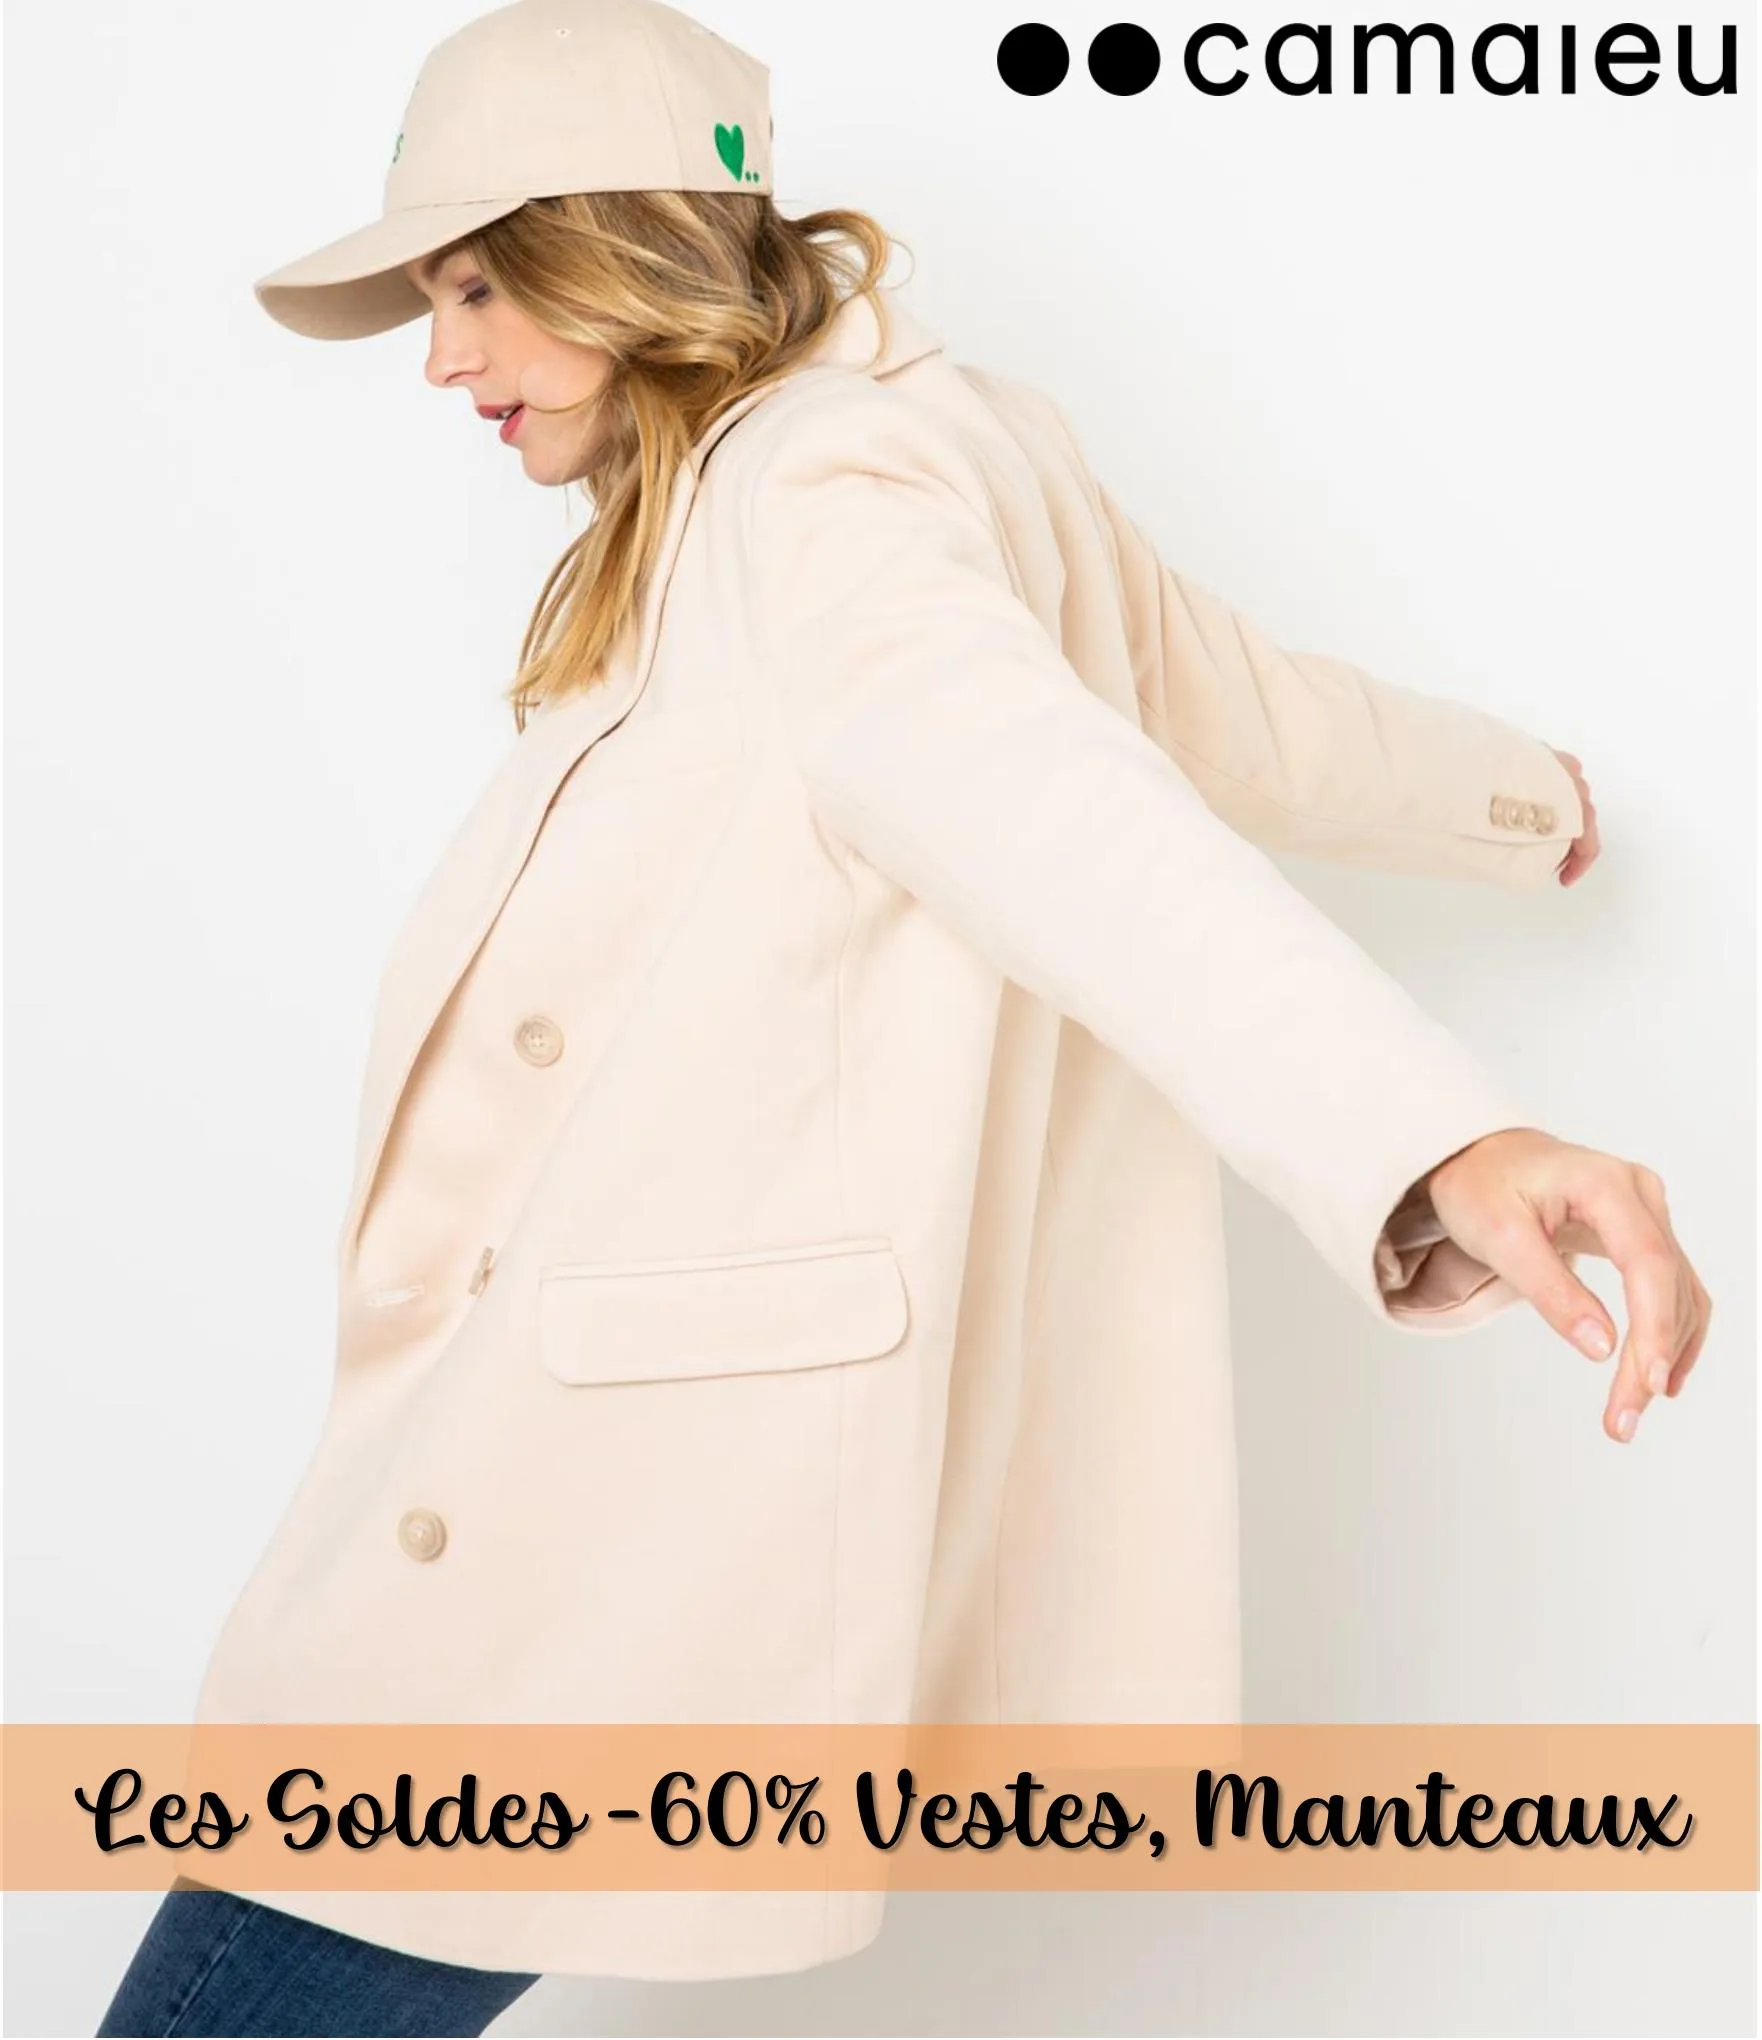 Catalogue Les Soldes -60% Vestes, Manteaux, page 00001